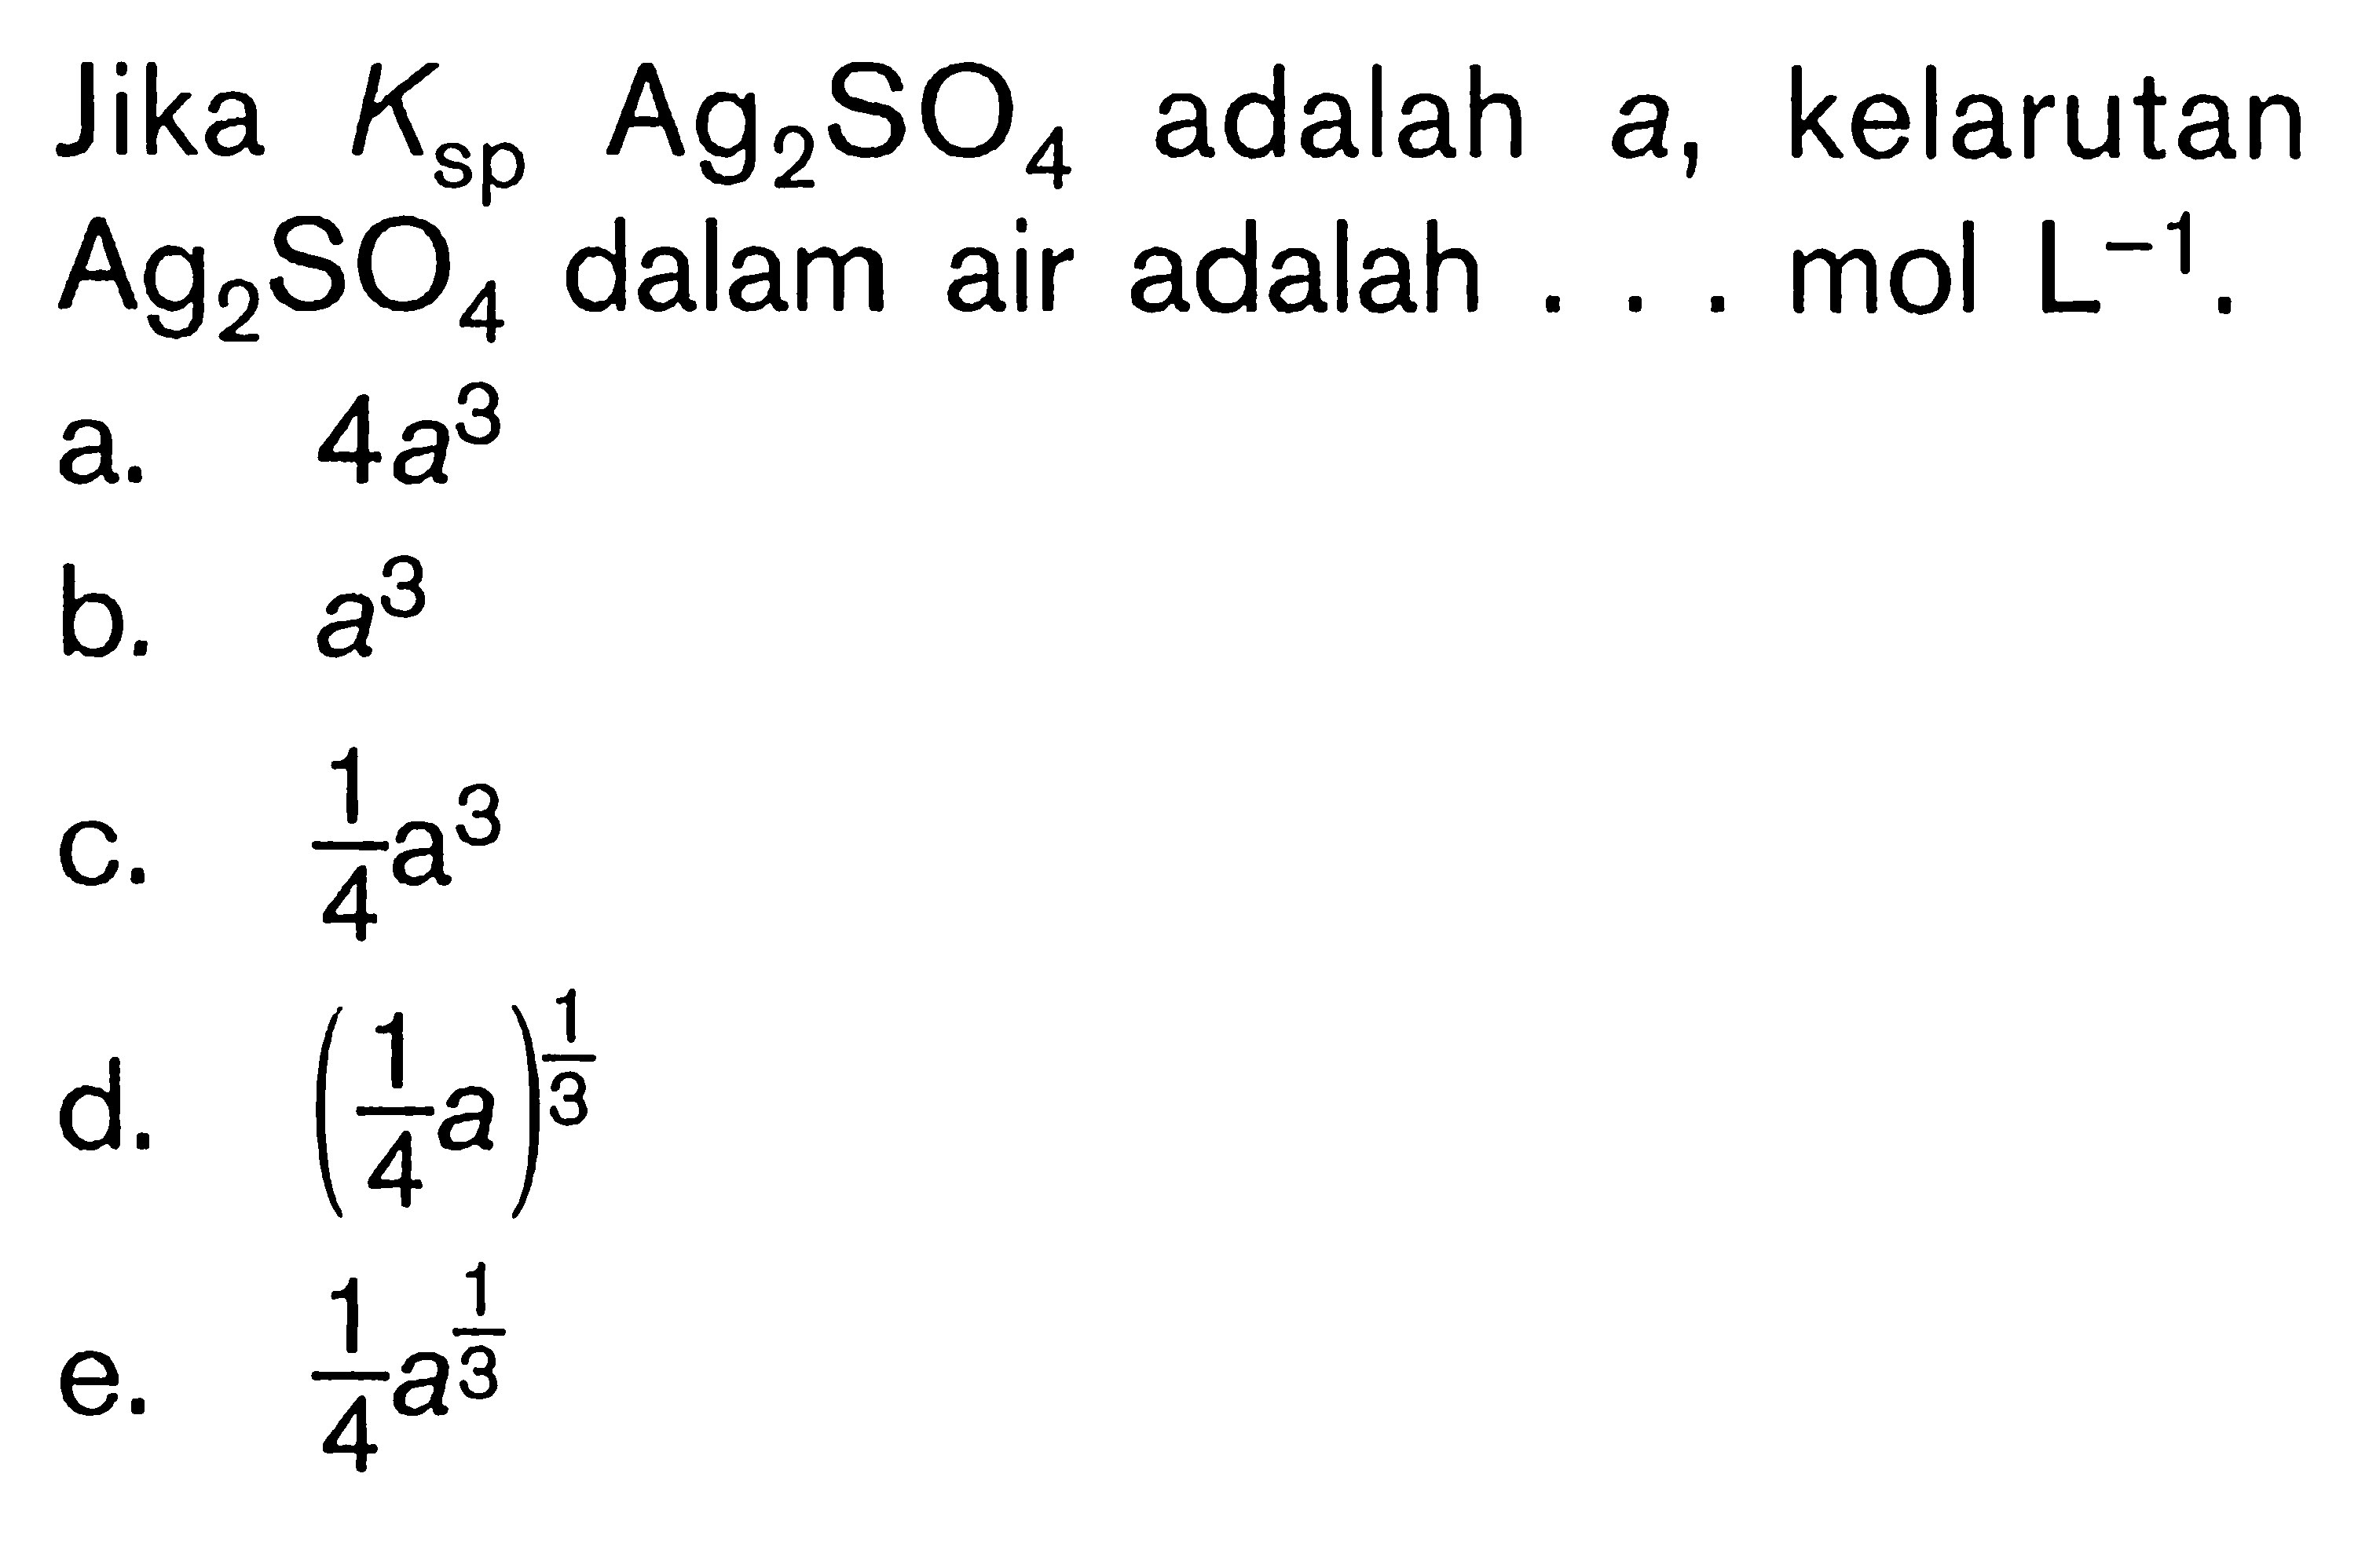 Jika  K sp  Ag2 SO4  adalah a, kelarutan  Ag2 SO4  dalam air adalah ... mol  L^-1 .a.  4 a^3 b.  a^3 c.  1/4 a^3 d.  (1/4 a)^1/3 e.  1/4 a^1/3 